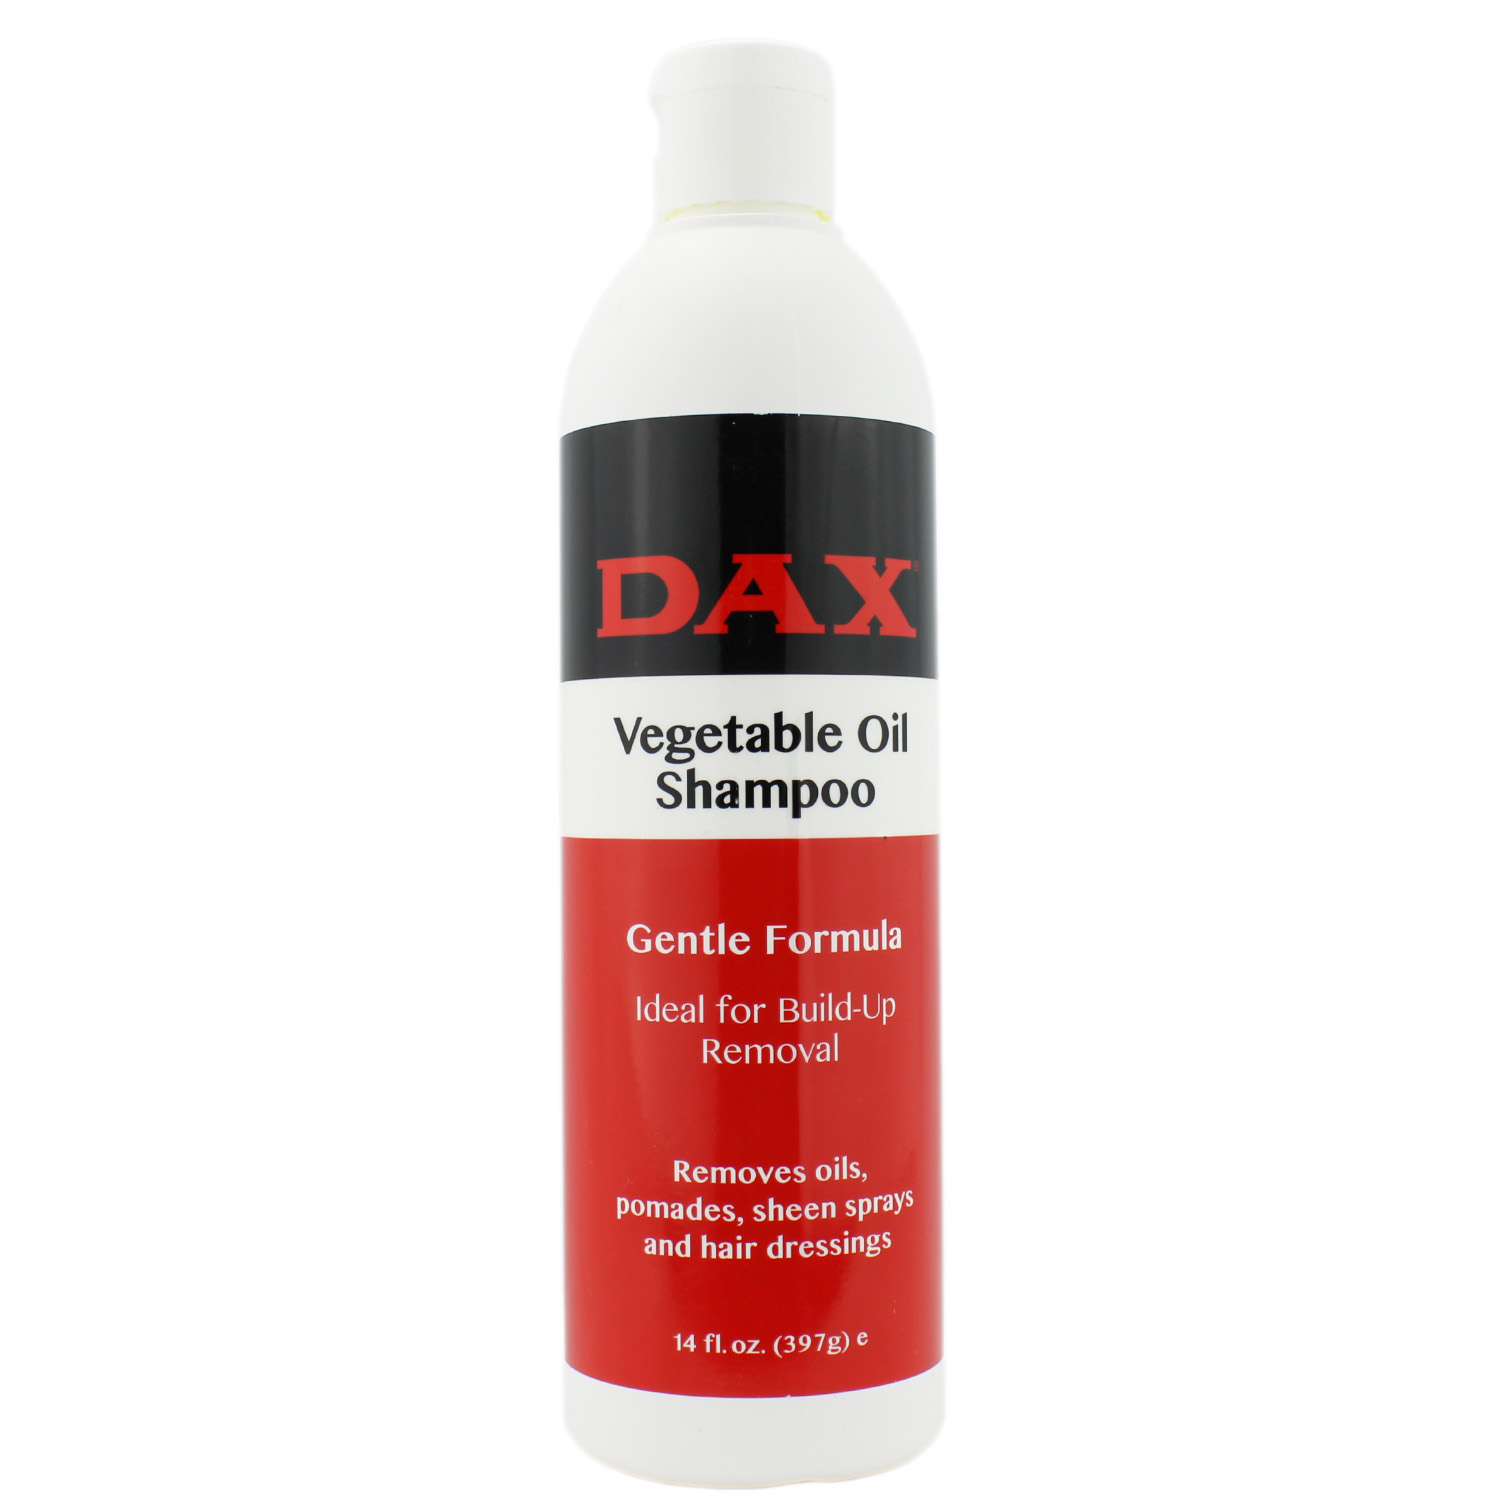 DAX Vegetable Oil Shampoo 397g